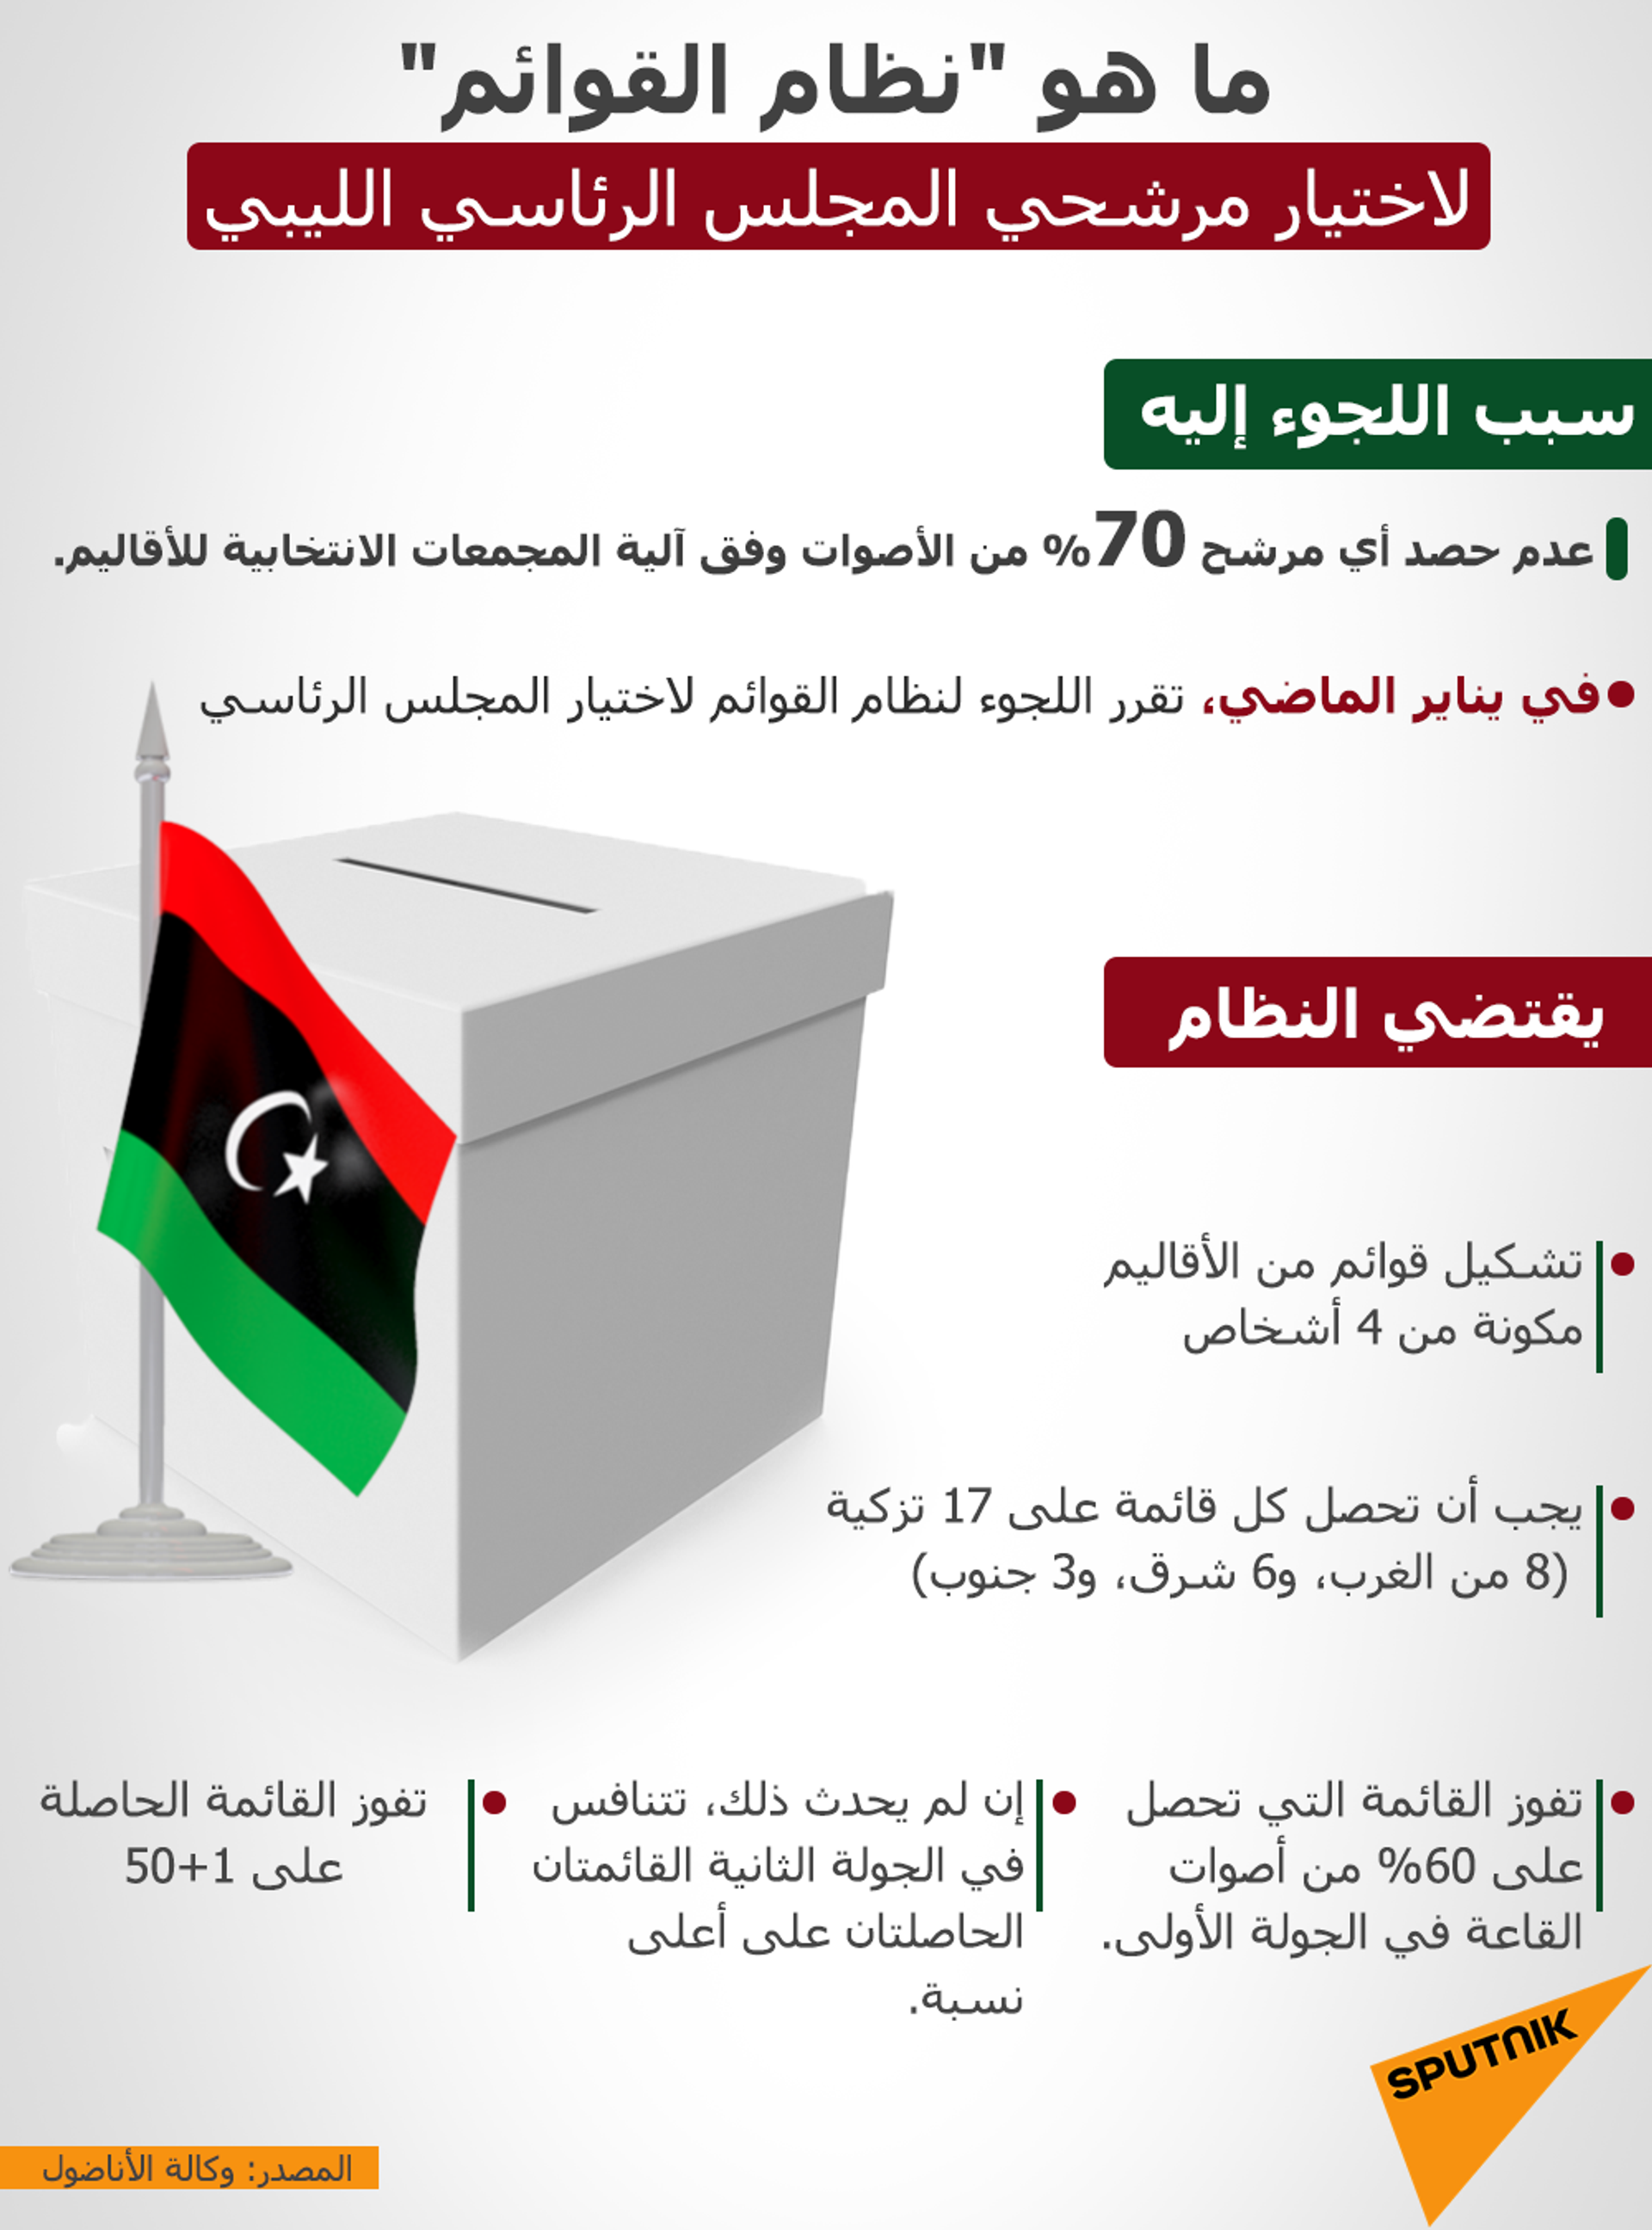 وليامز: مرشحو السلطة الليبية الجديدة تعهدوا بإجراء الانتخابات في 24 ديسمبر من هذا العام - سبوتنيك عربي, 1920, 05.02.2021